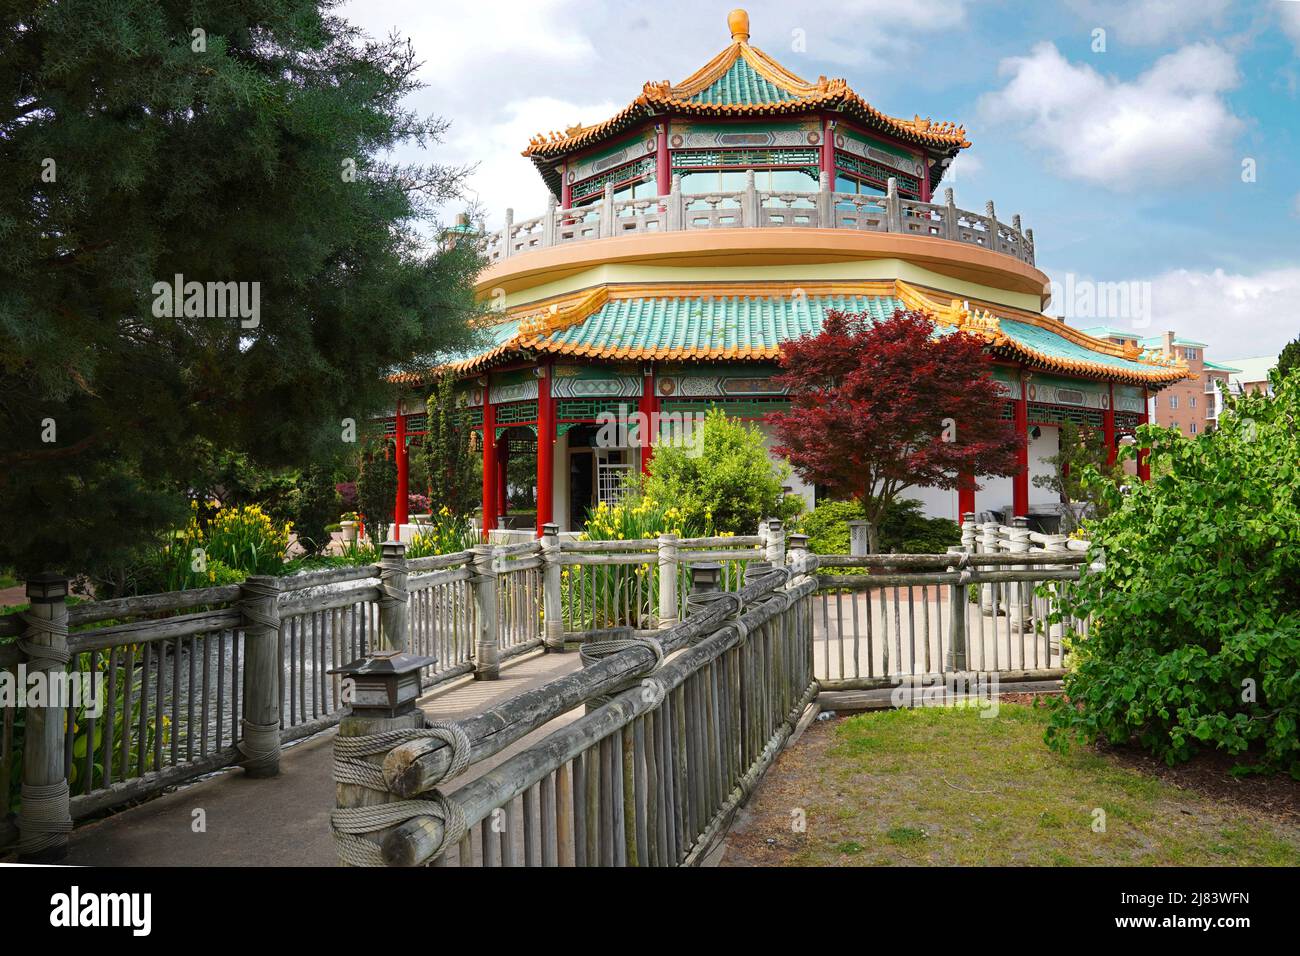 La pagoda fa parte dei giardini orientali ed era un regalo alla Virginia e alla città di Norfolk in 1989 che onorava i taiwans che commerciavano i legami con la Virginia. Foto Stock